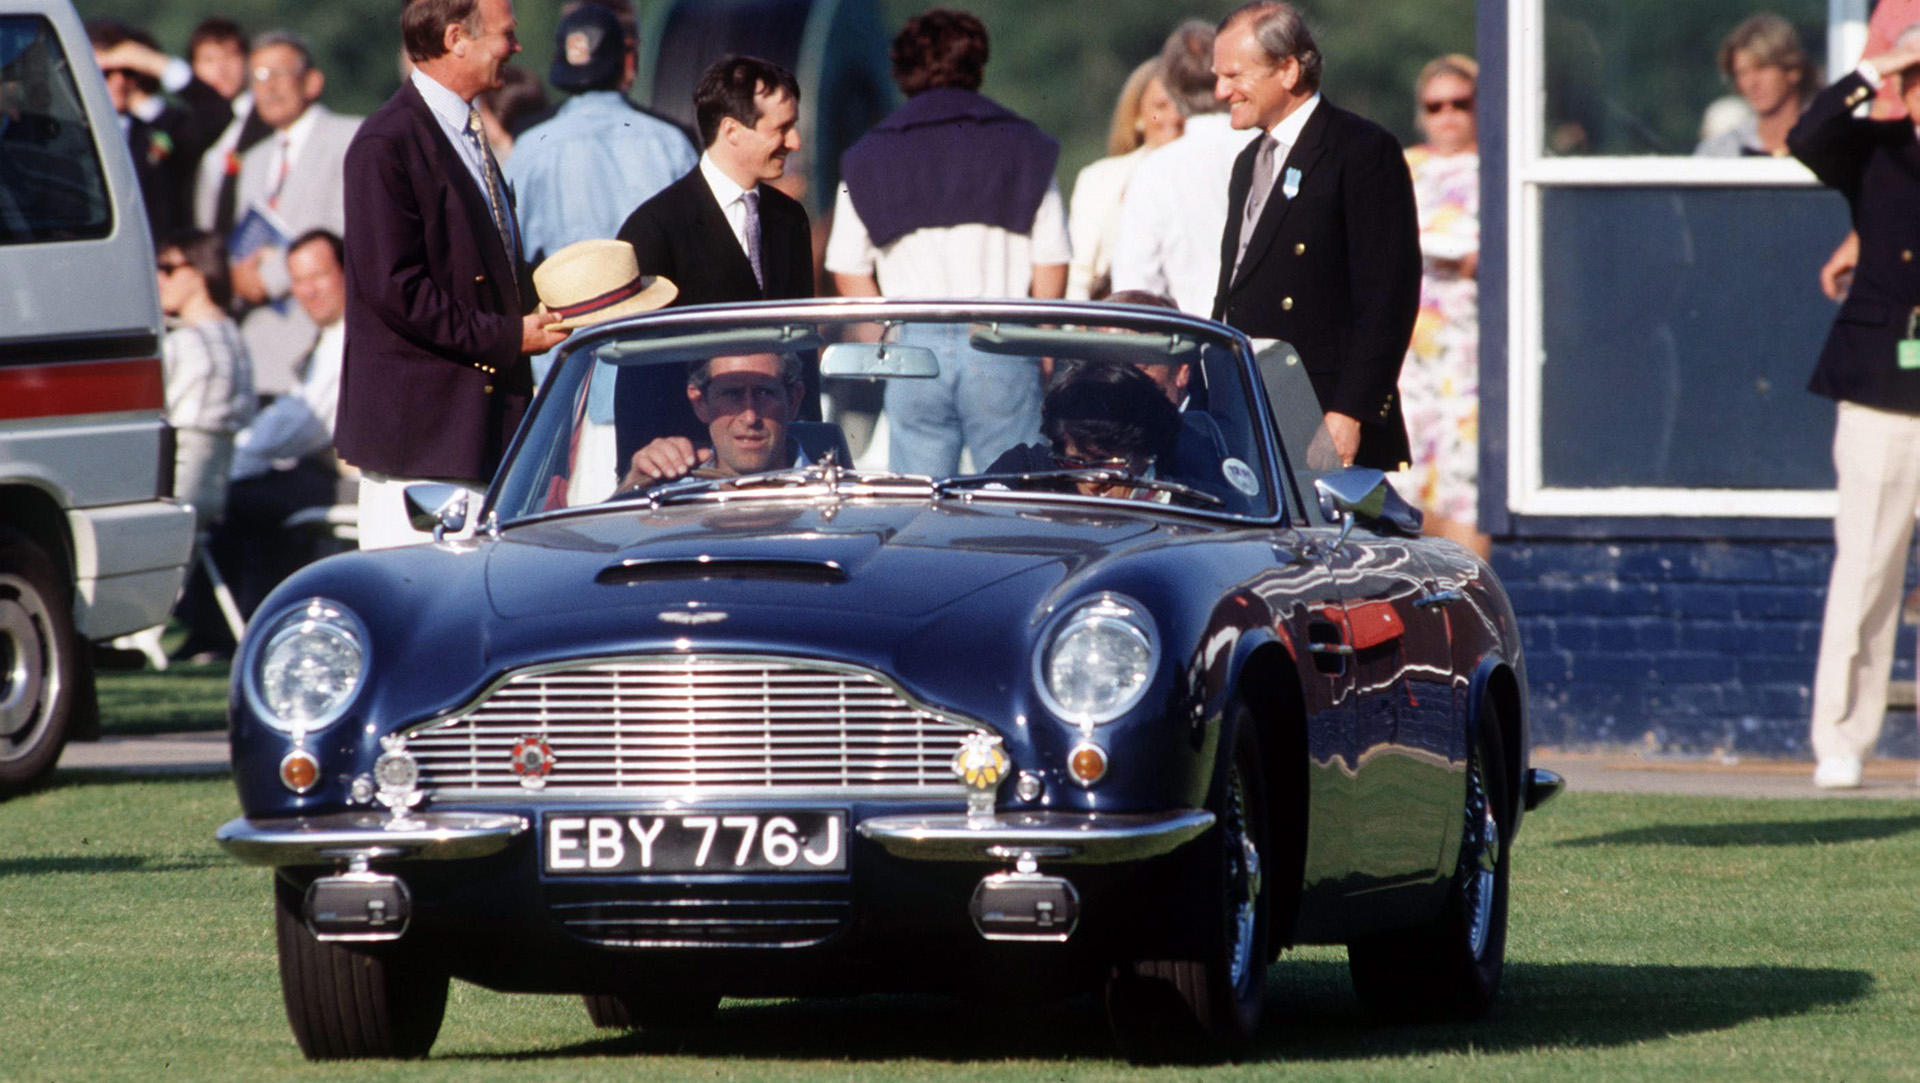 Este auto siempre fue el predilecto de Carlos III, ya que fue el obsequio que le hizo su madre, la reina Isabel II, cuando cumplió 21 años en 1969